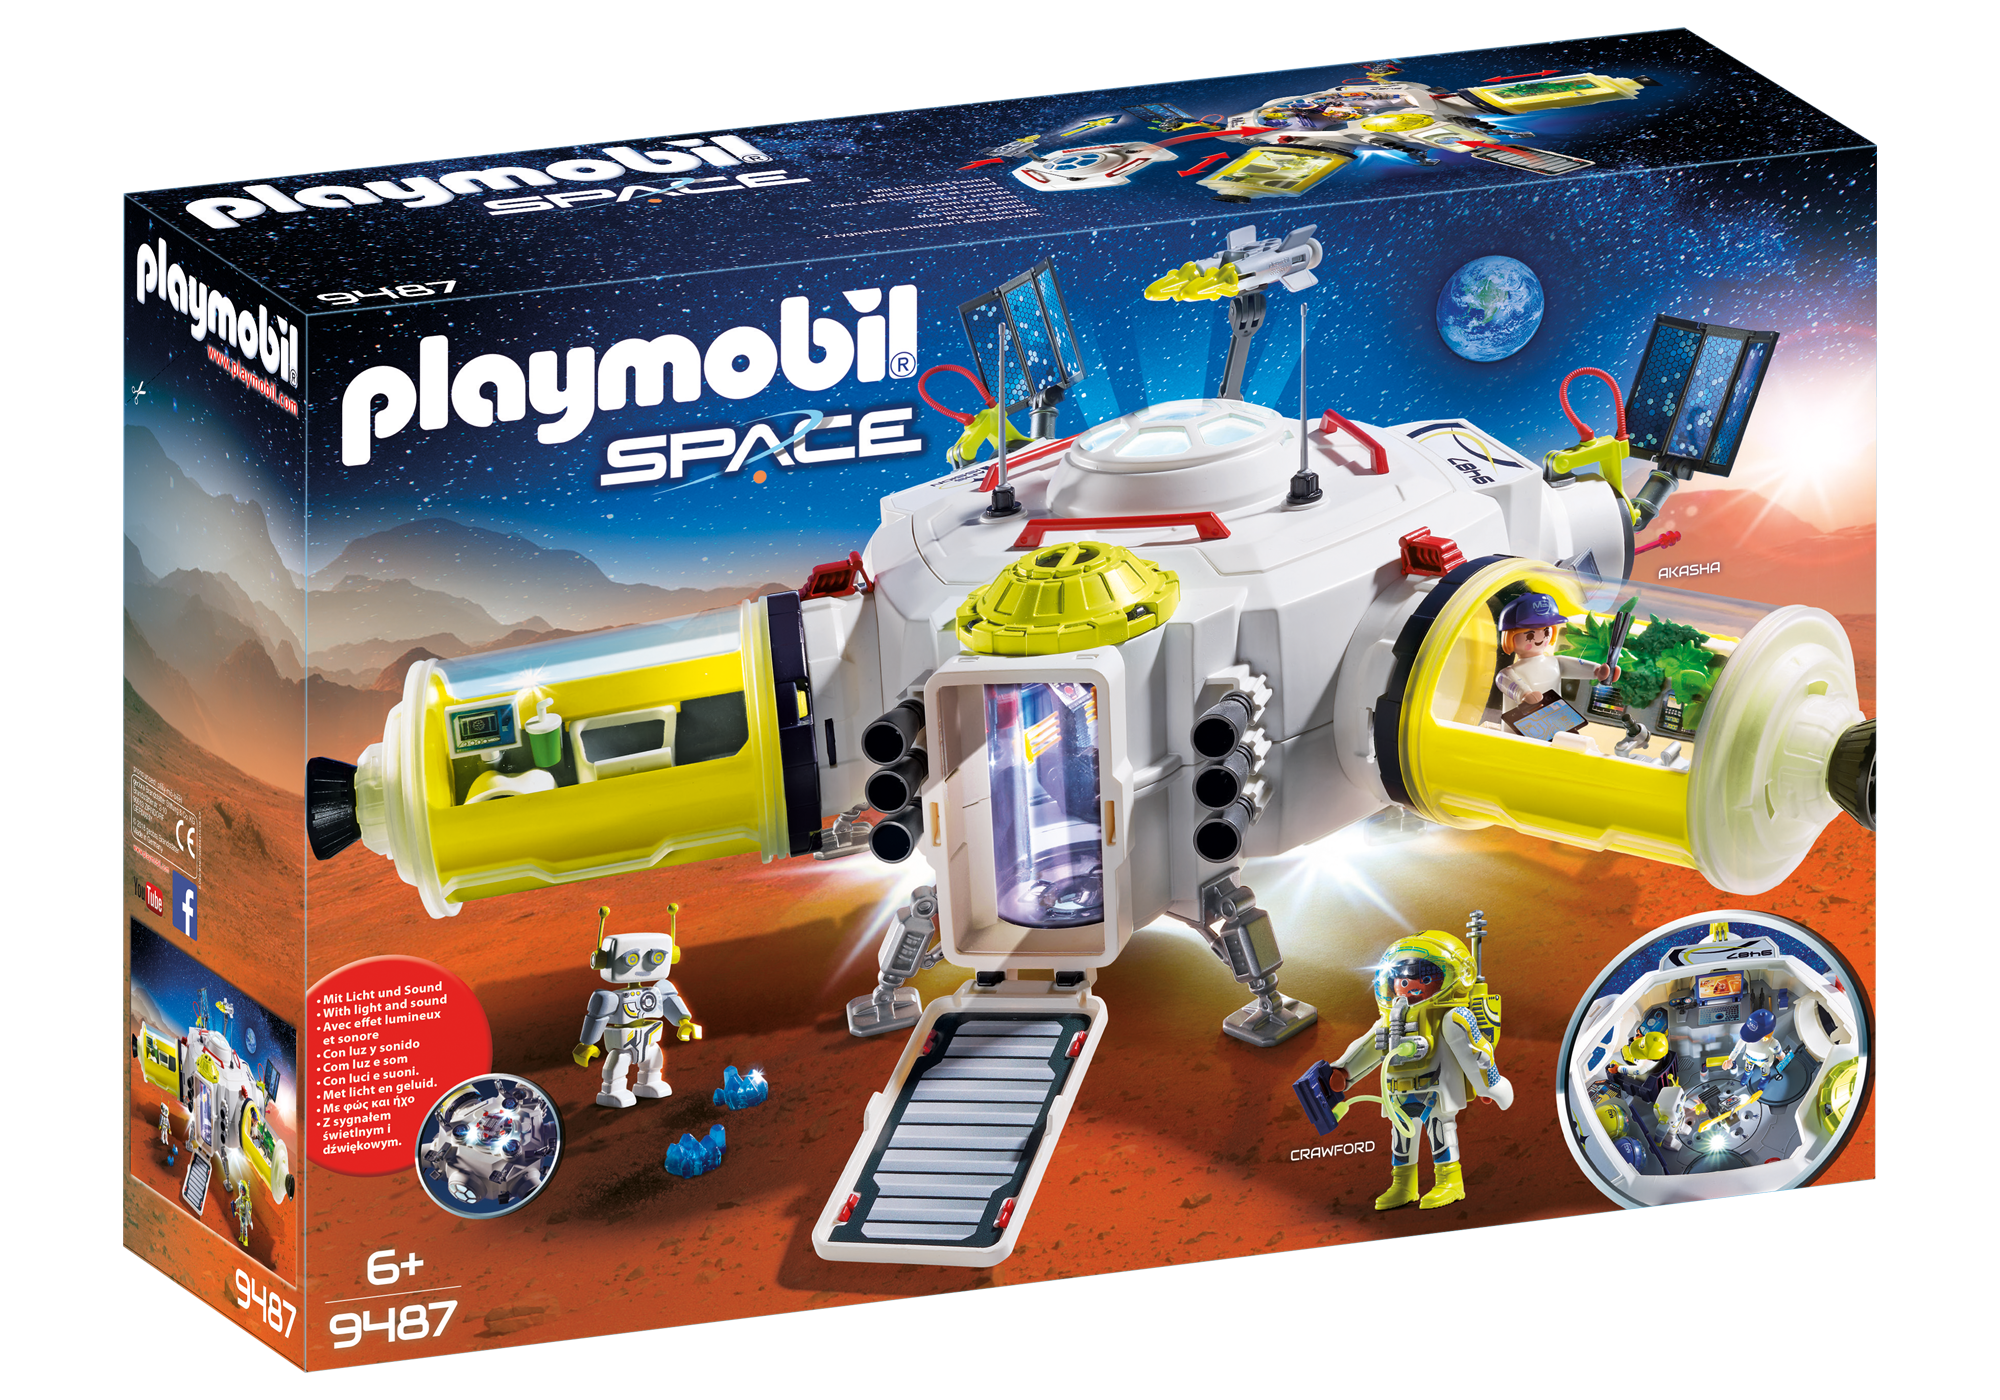 Playmobil Space 2018 9487_product_box_front?locale=de-DE,de,*&$pdp_product_main_xl$&strip=true